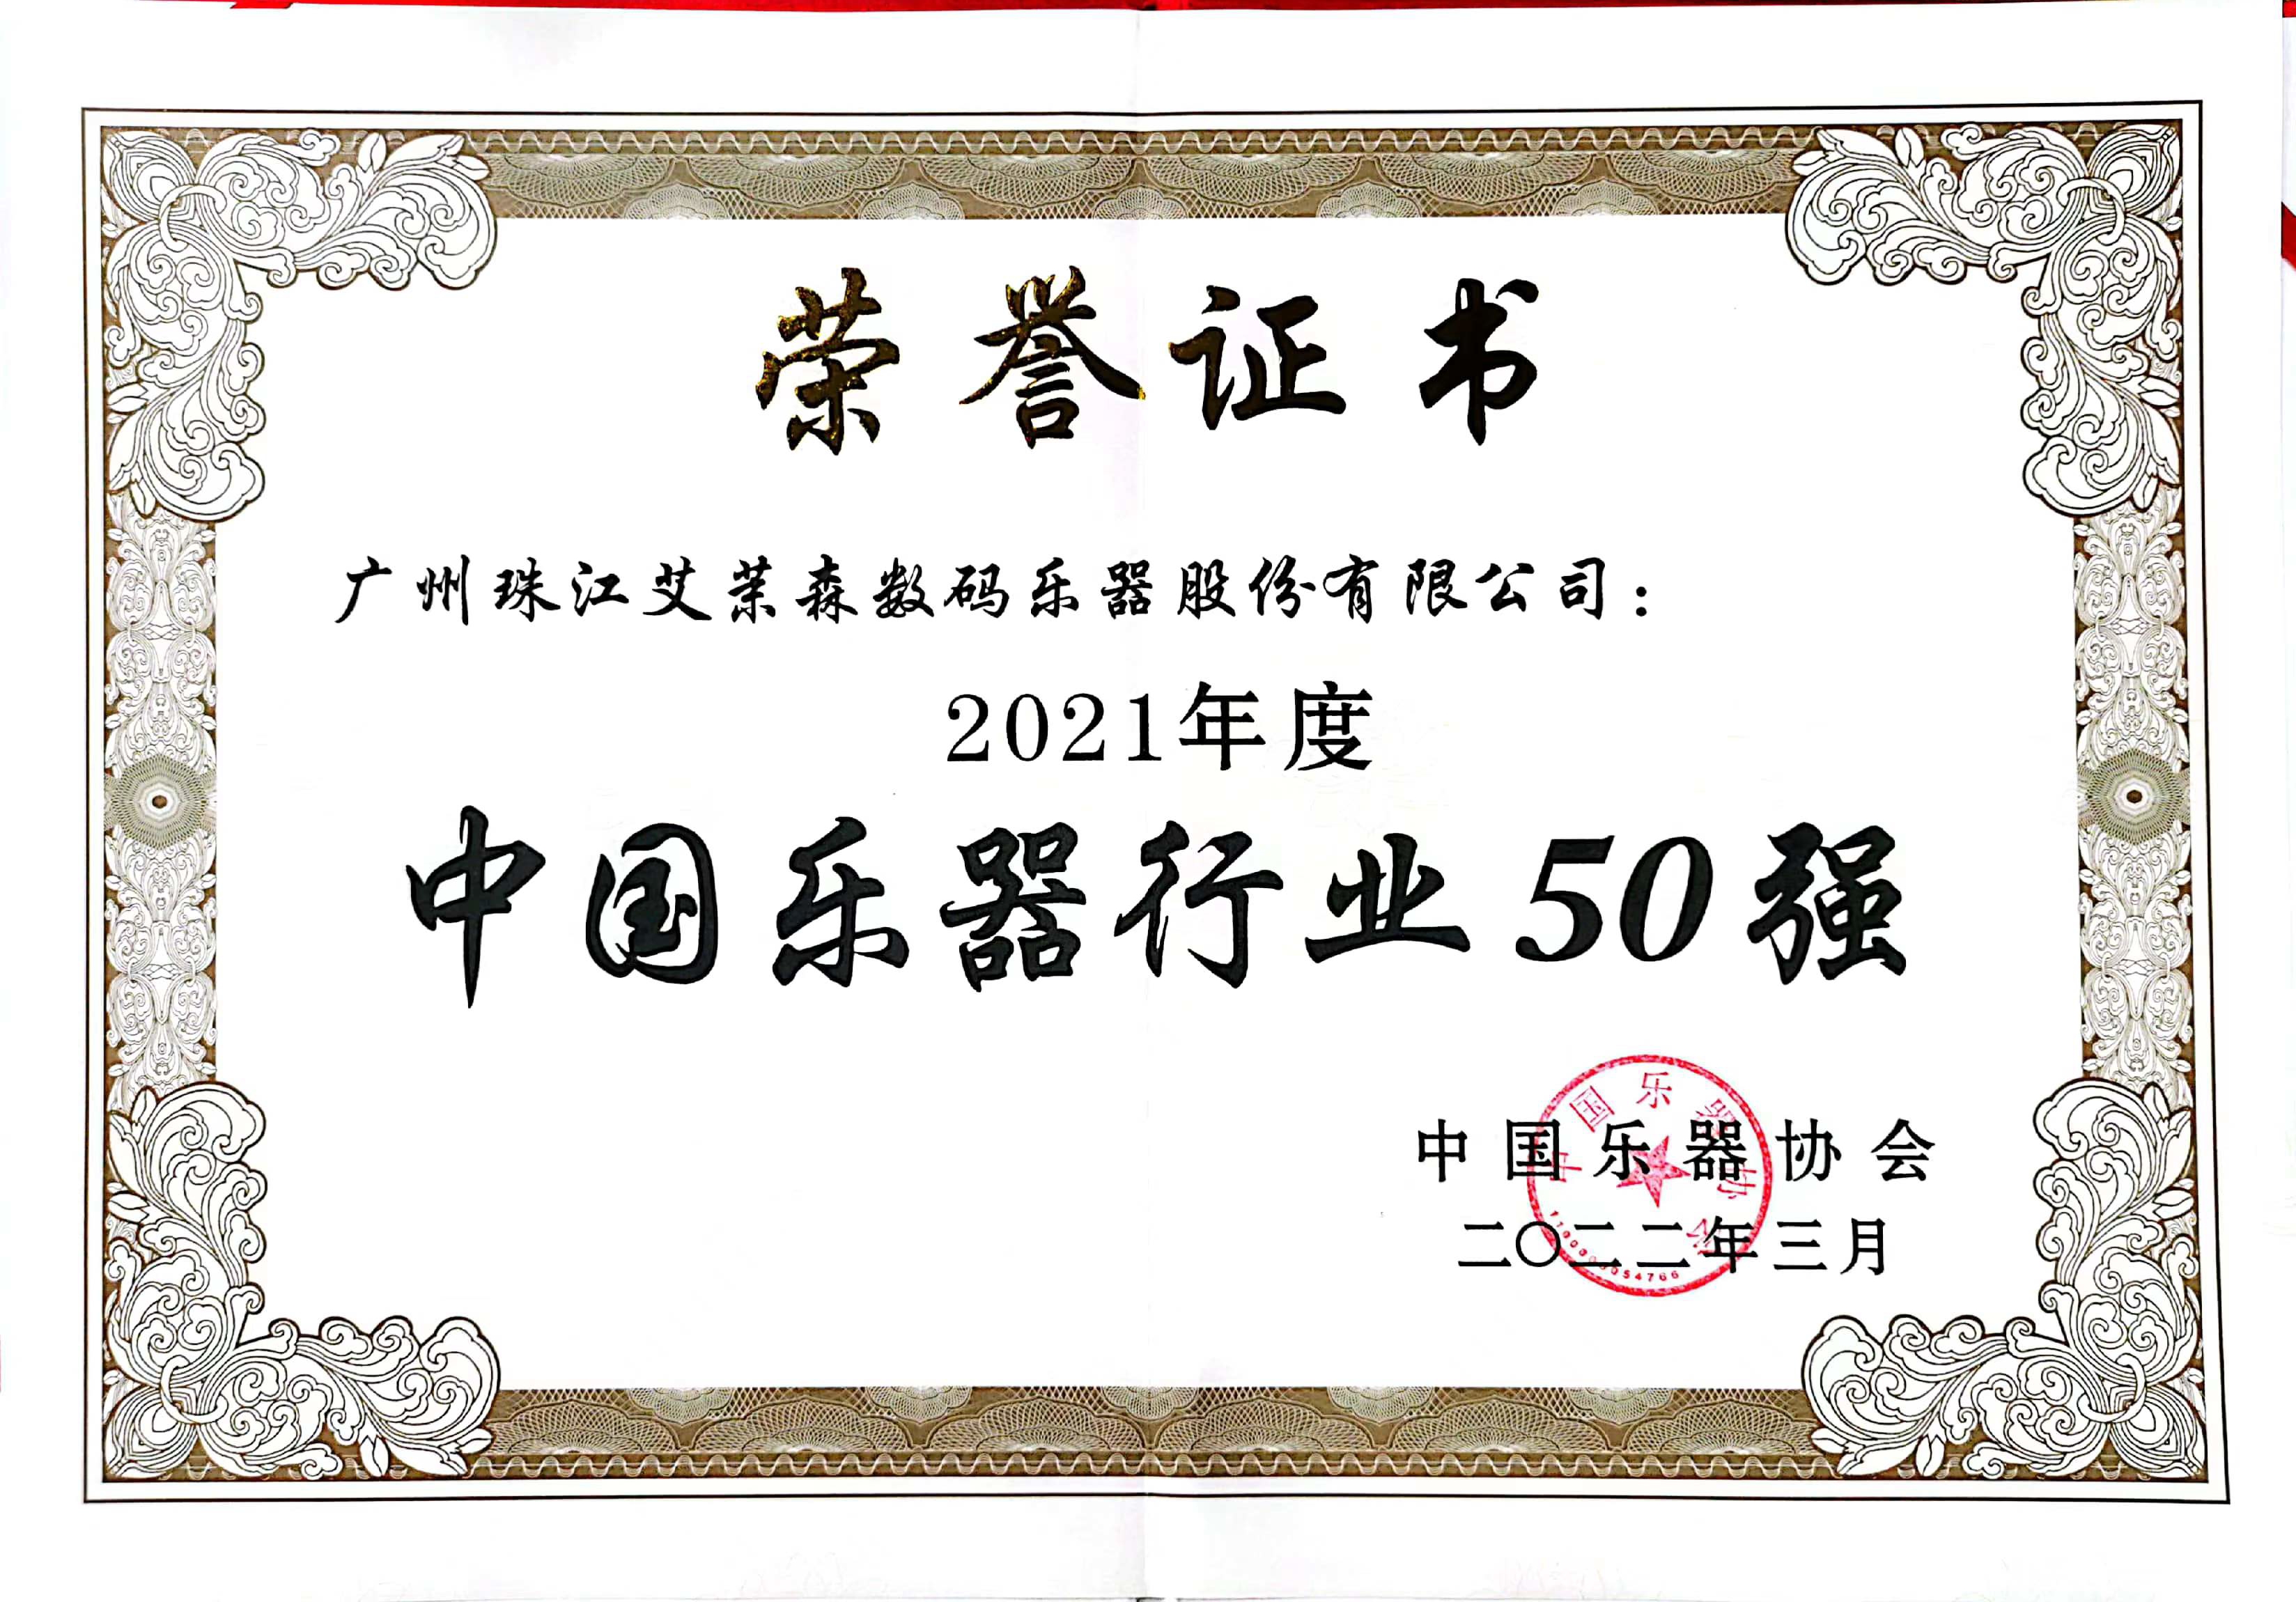 艾茉森荣获“2021年度中国乐器行业50强”称号(图1)